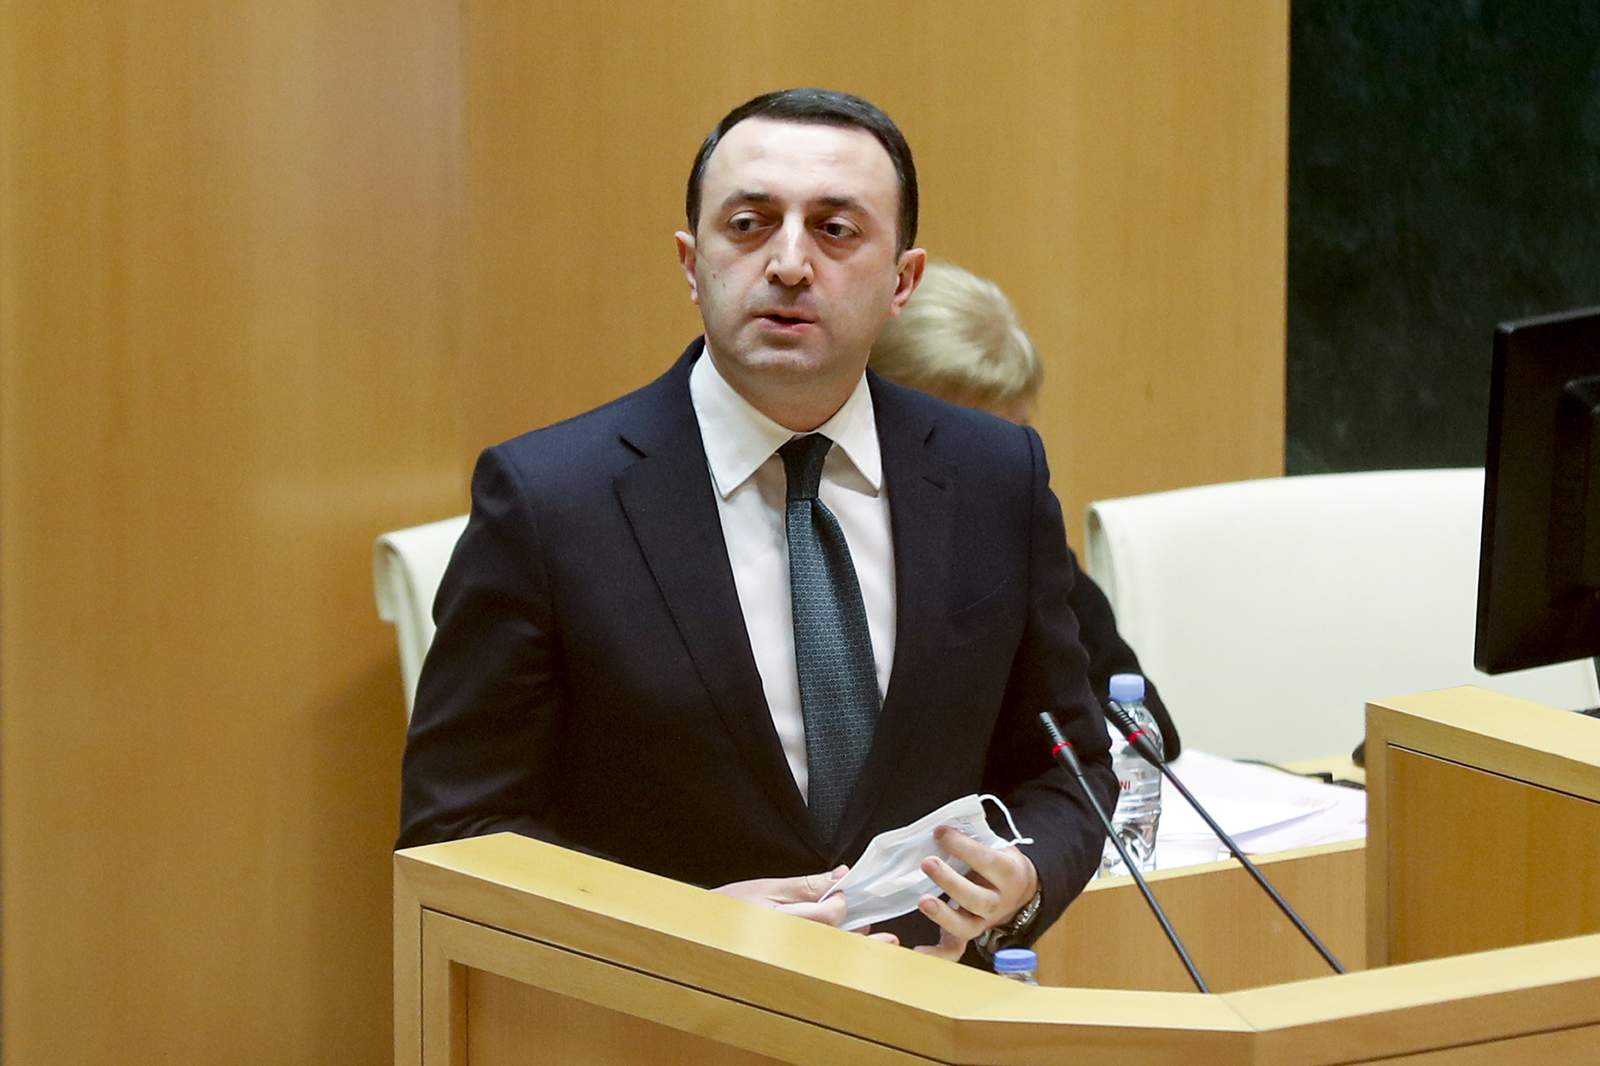 Ex-Soviet republic Georgia's parliament appoints new premier